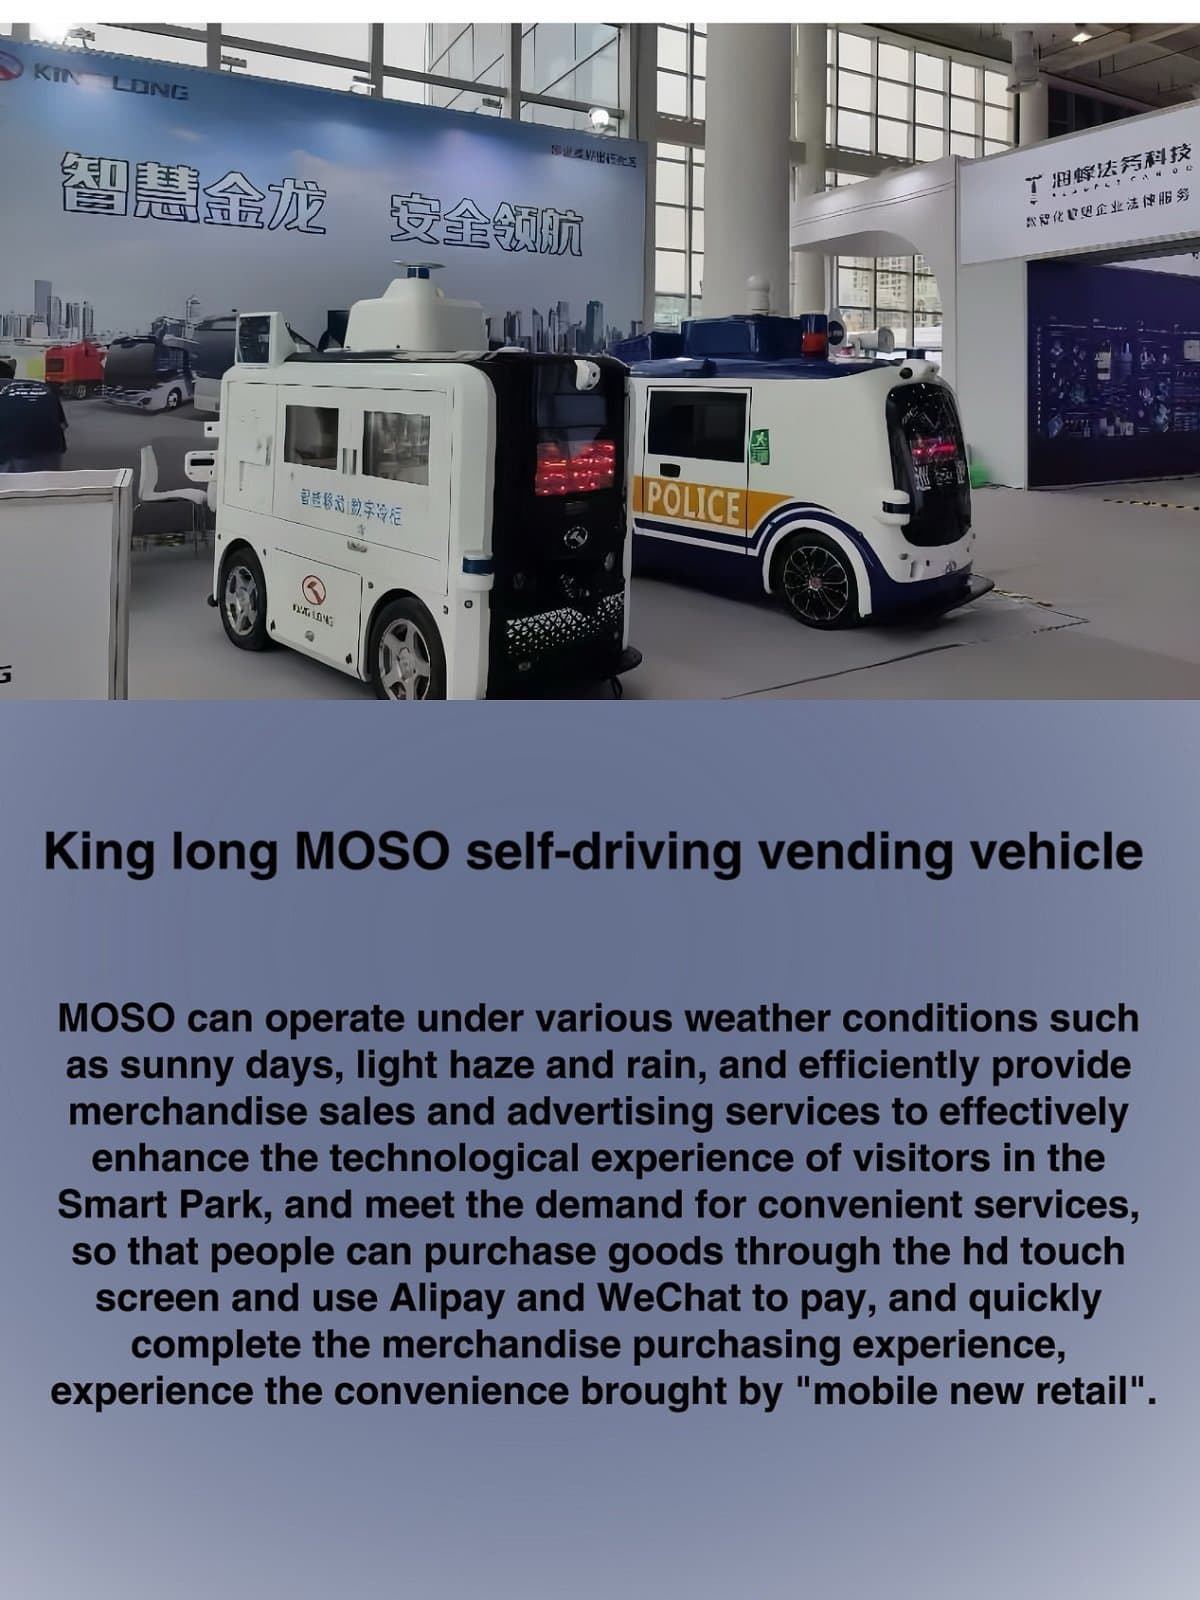 MOSO self-driving vending car